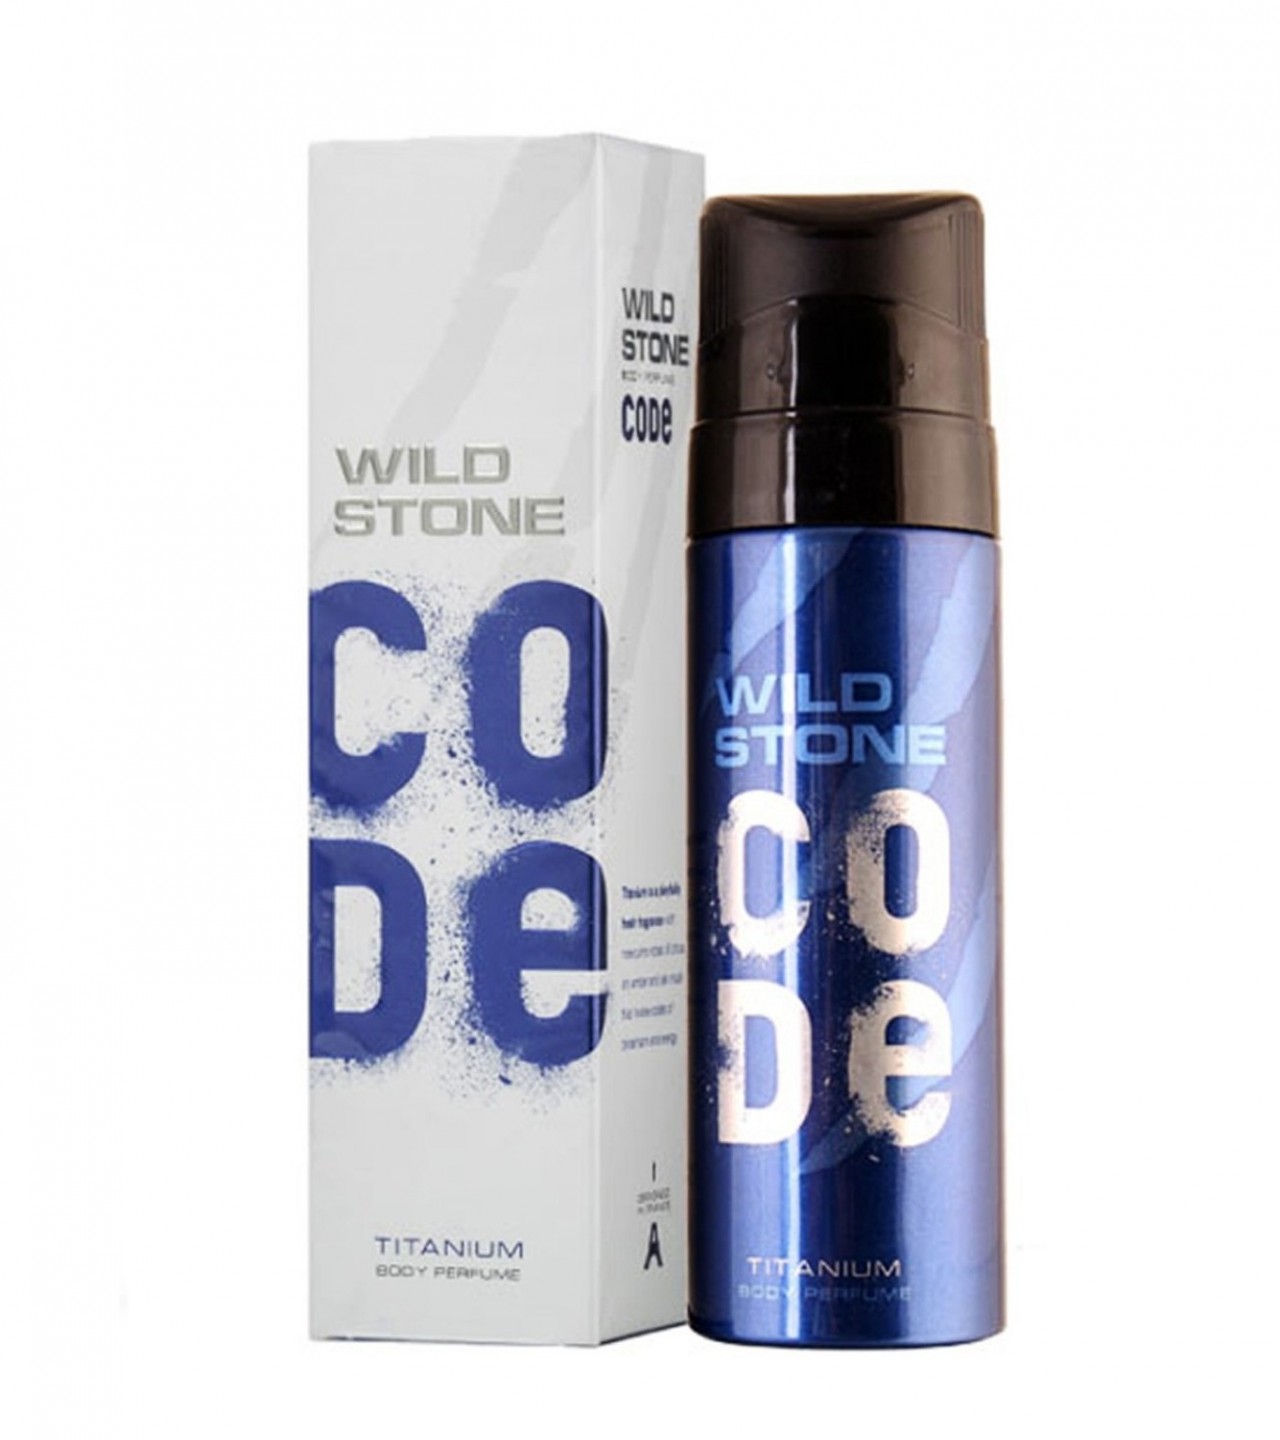 Wild Stone Code Titanium Perfume Body Spray For Men - 120 ml